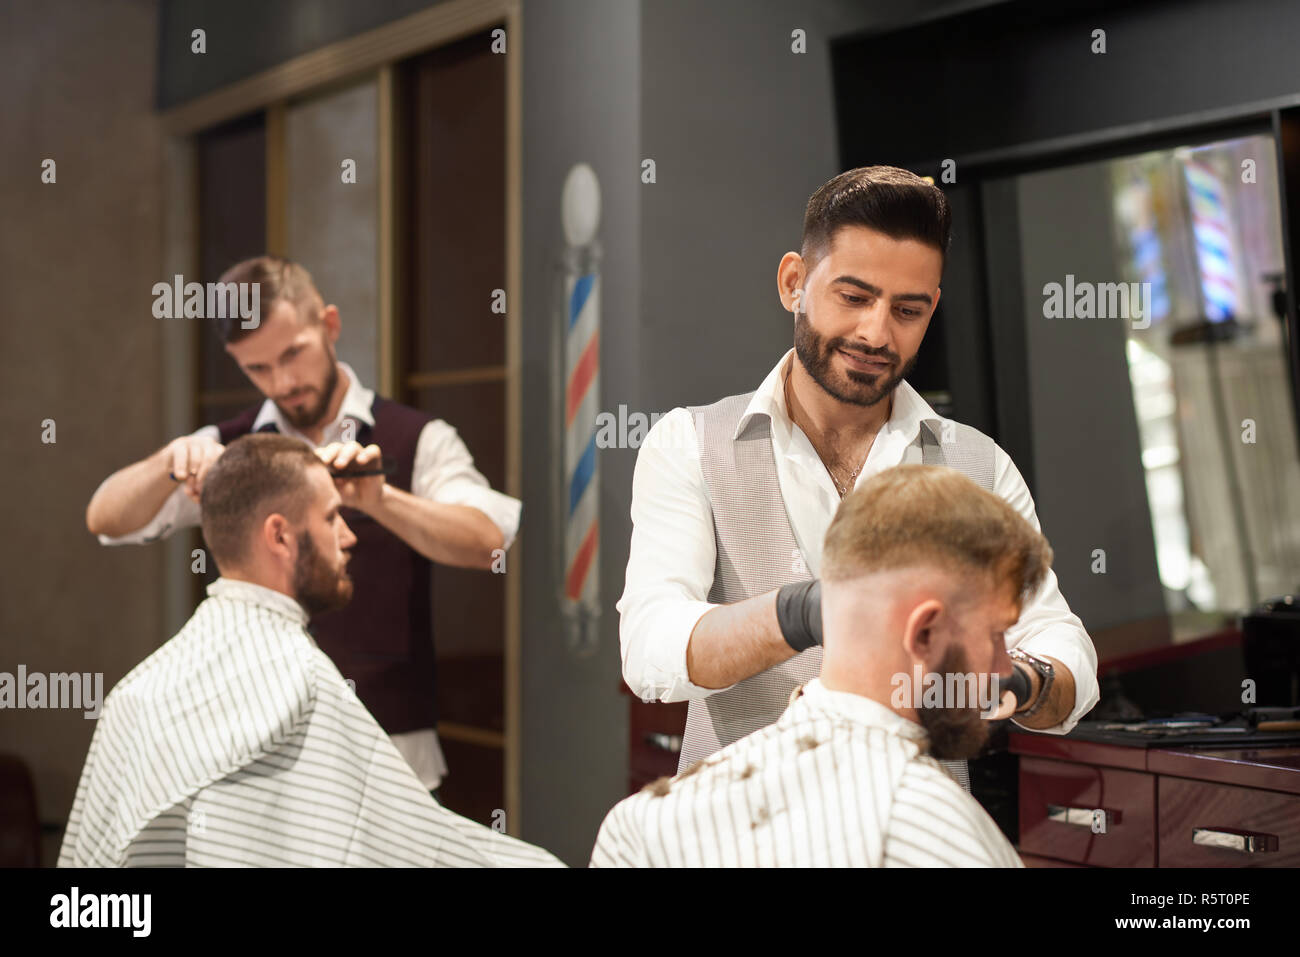 Ansicht von der Seite der professionellen Friseur Wartung männlichen Klienten im Stuhl sitzen im barbershop. Stilvolle Friseur in Uniform und Schutzhandschuhe Haare schneiden. Konzept der Hairstyling und Rasieren. Stockfoto